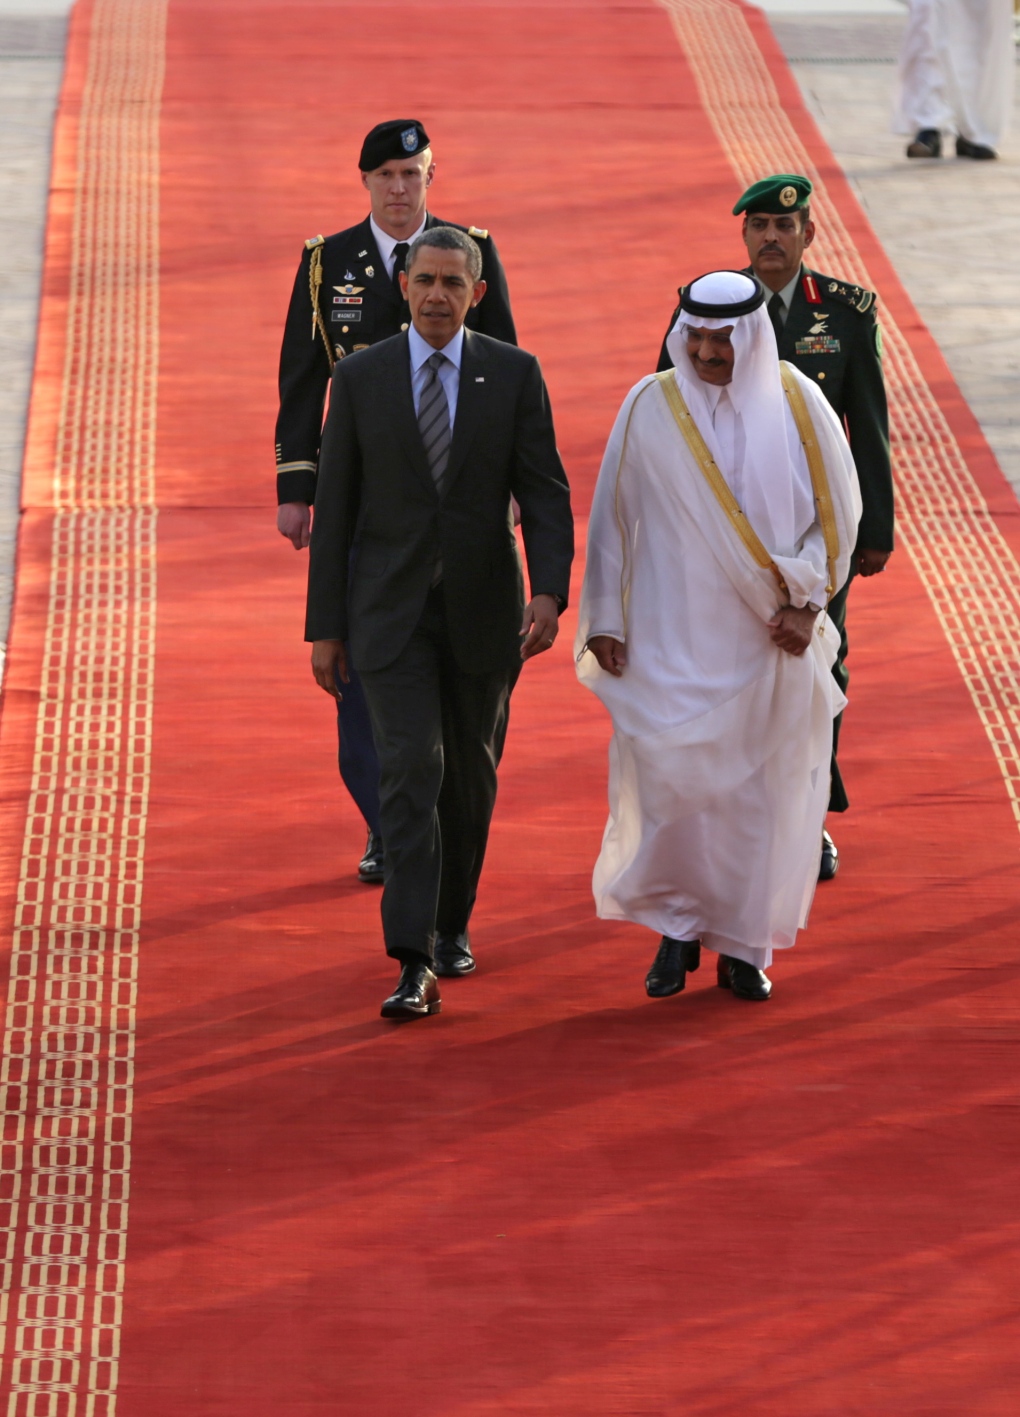 Obama meets with Saudi king